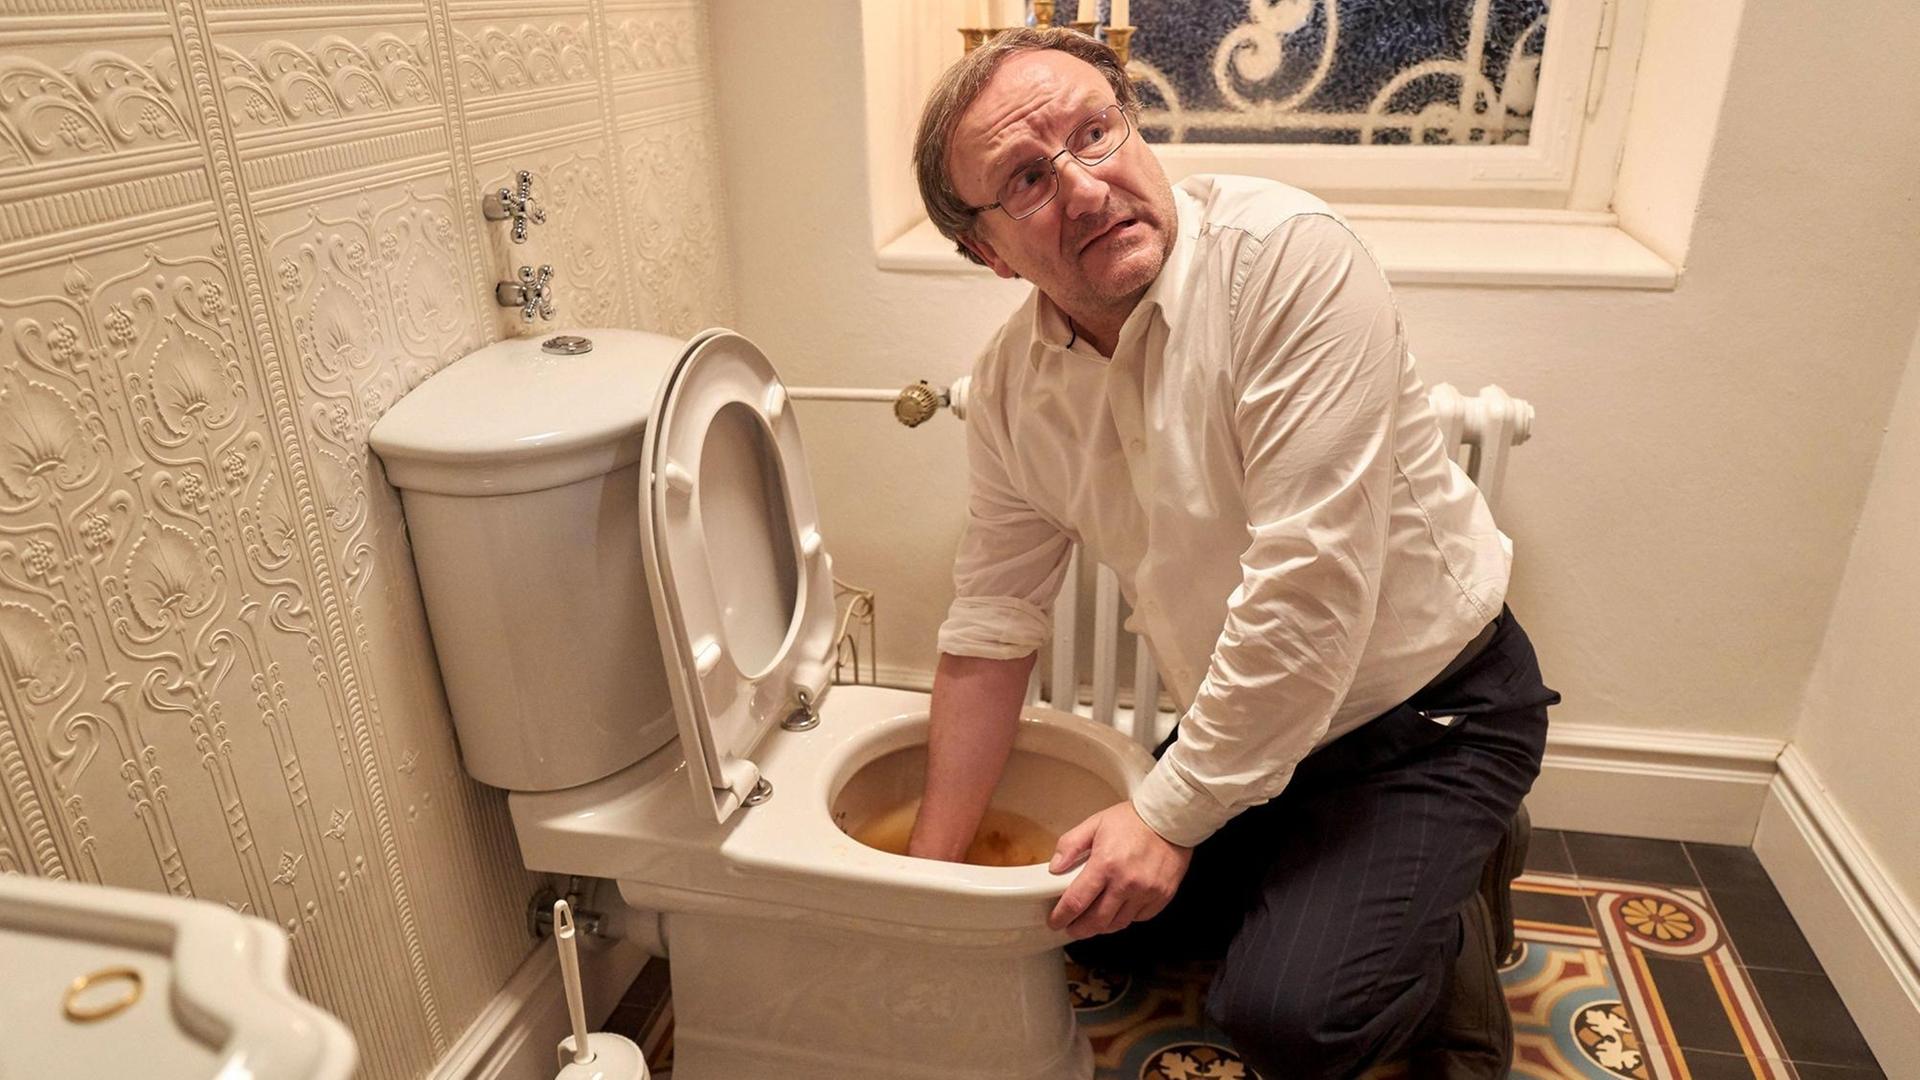 Szenefoto aus dem Fernsehfilm. Josef Asch, gespiel von Rainer Bock greift in einem Badezimmer mit der rechten Hand in die Toilettenschüssel.